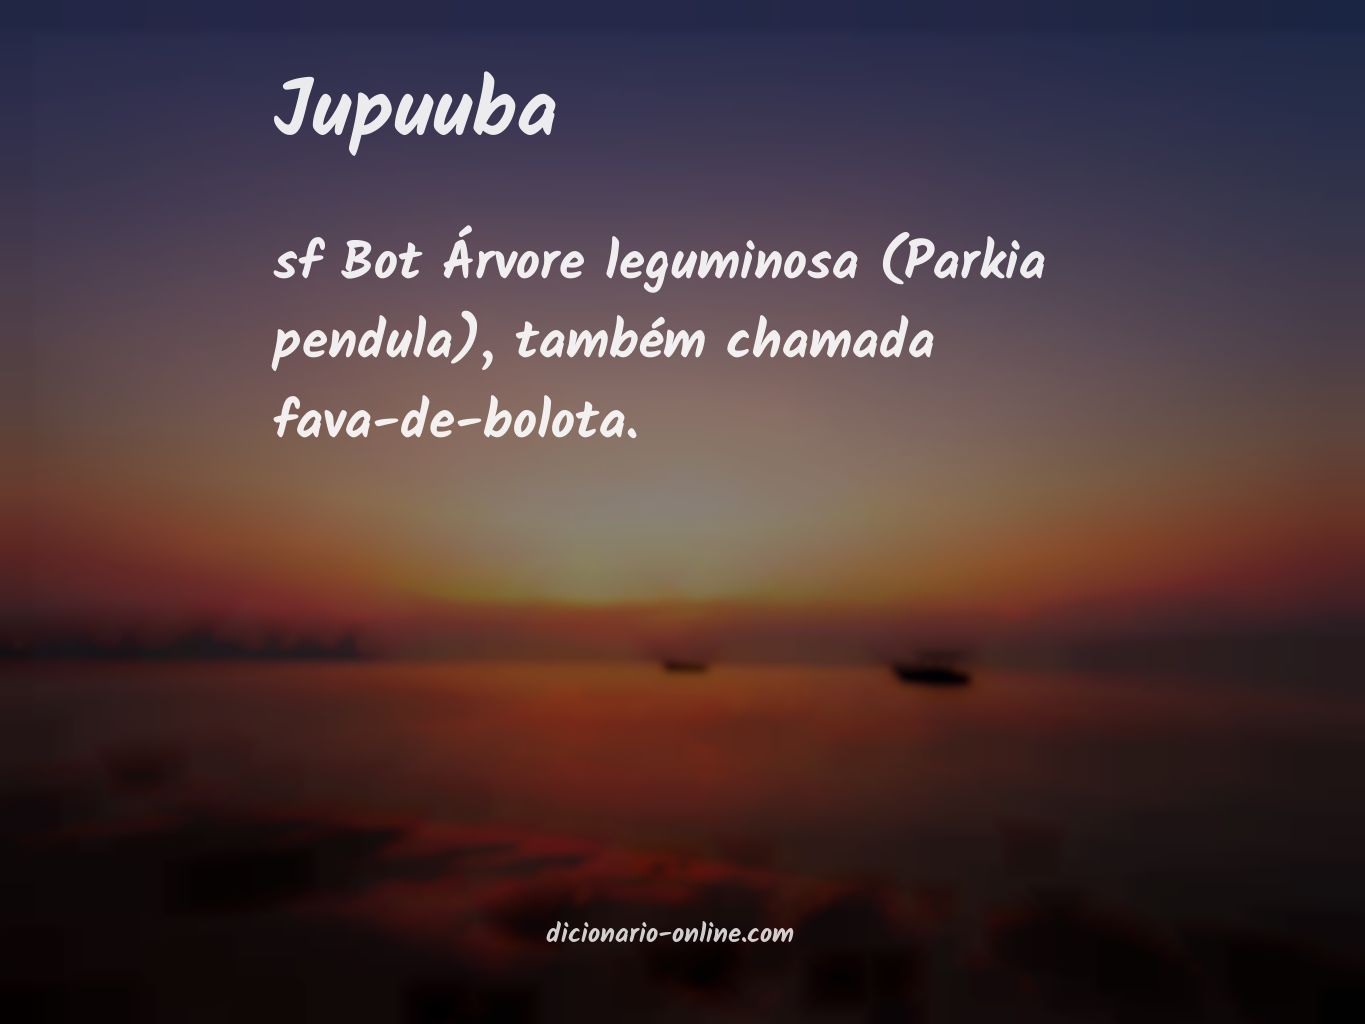 Significado de jupuuba